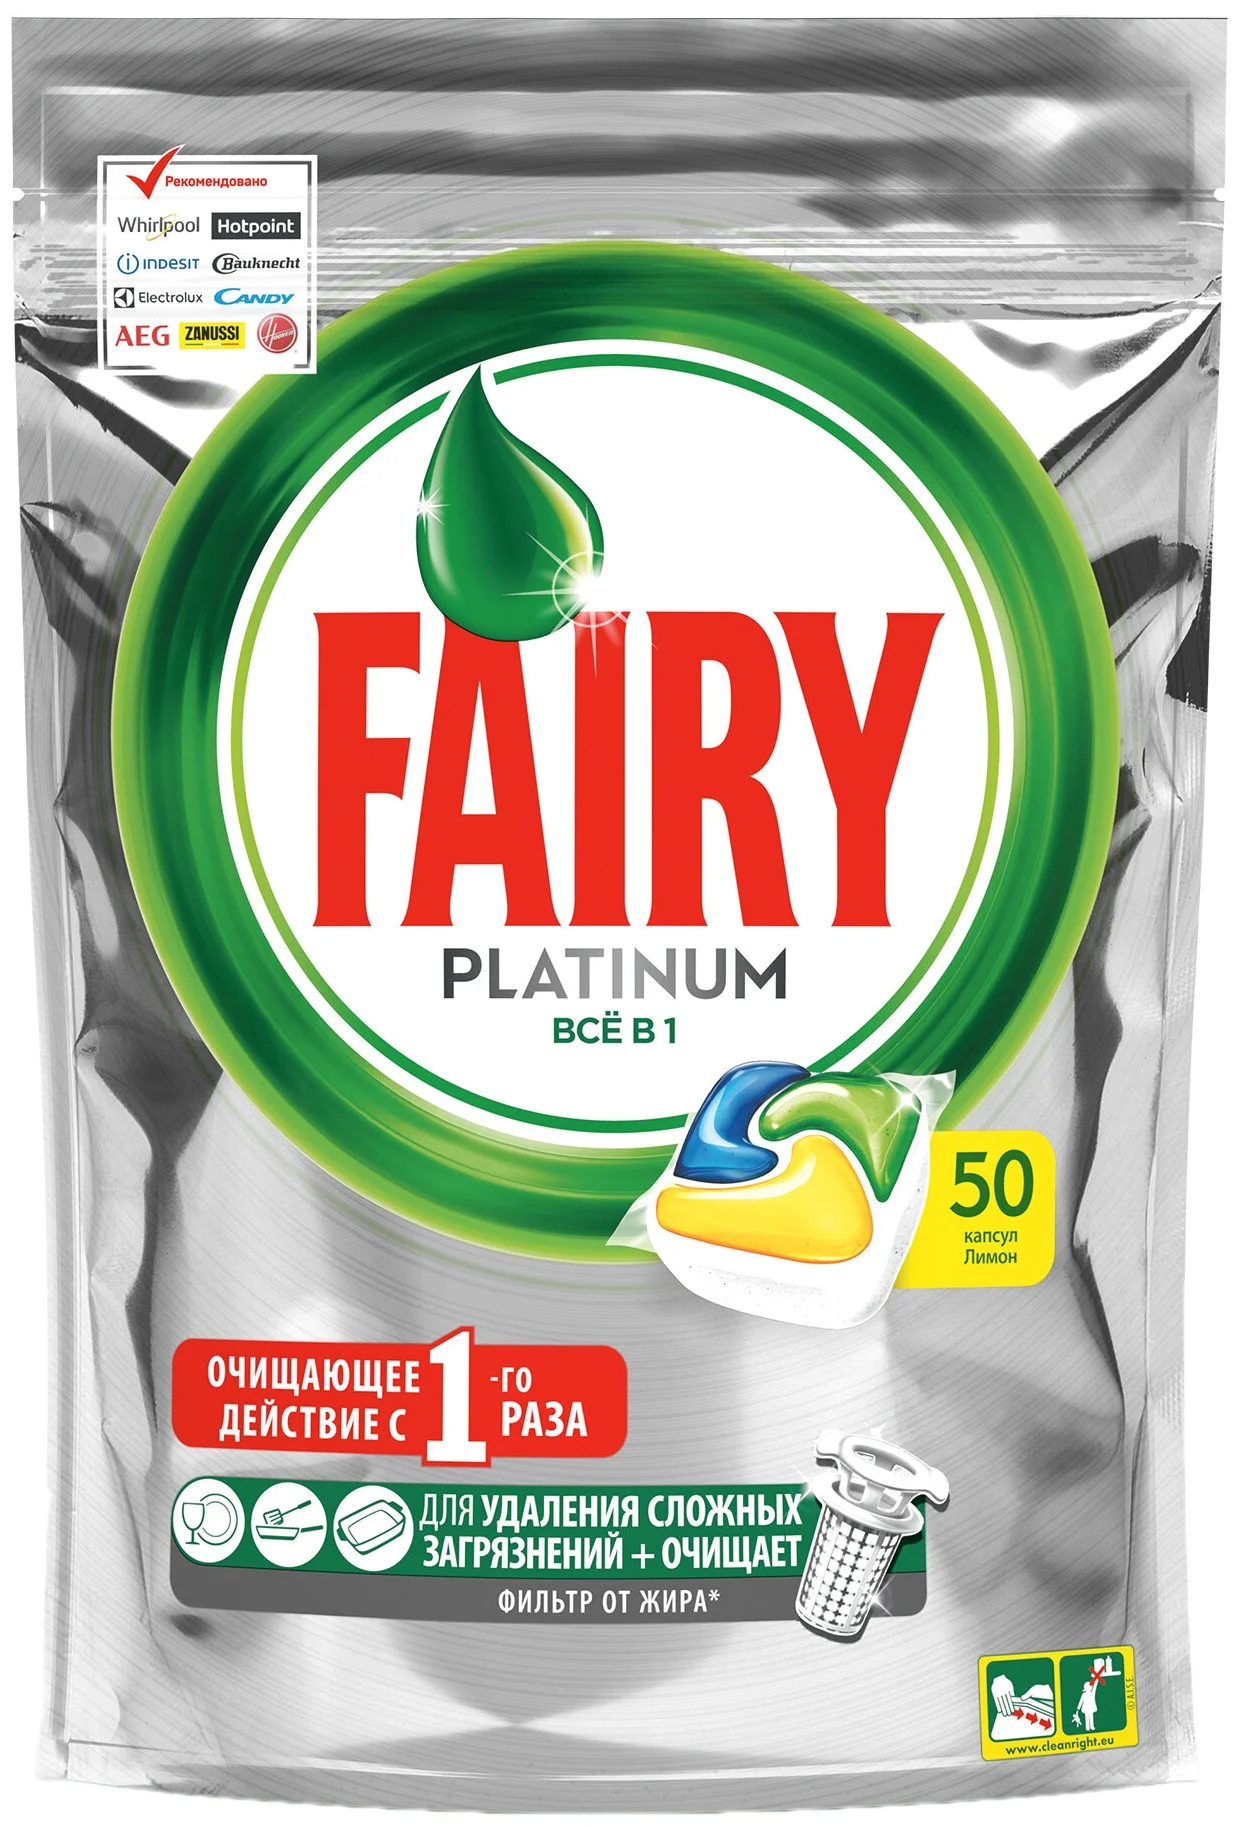 Fairy Platinum All in 1, лимон - содержит: активный кислород, энзимы